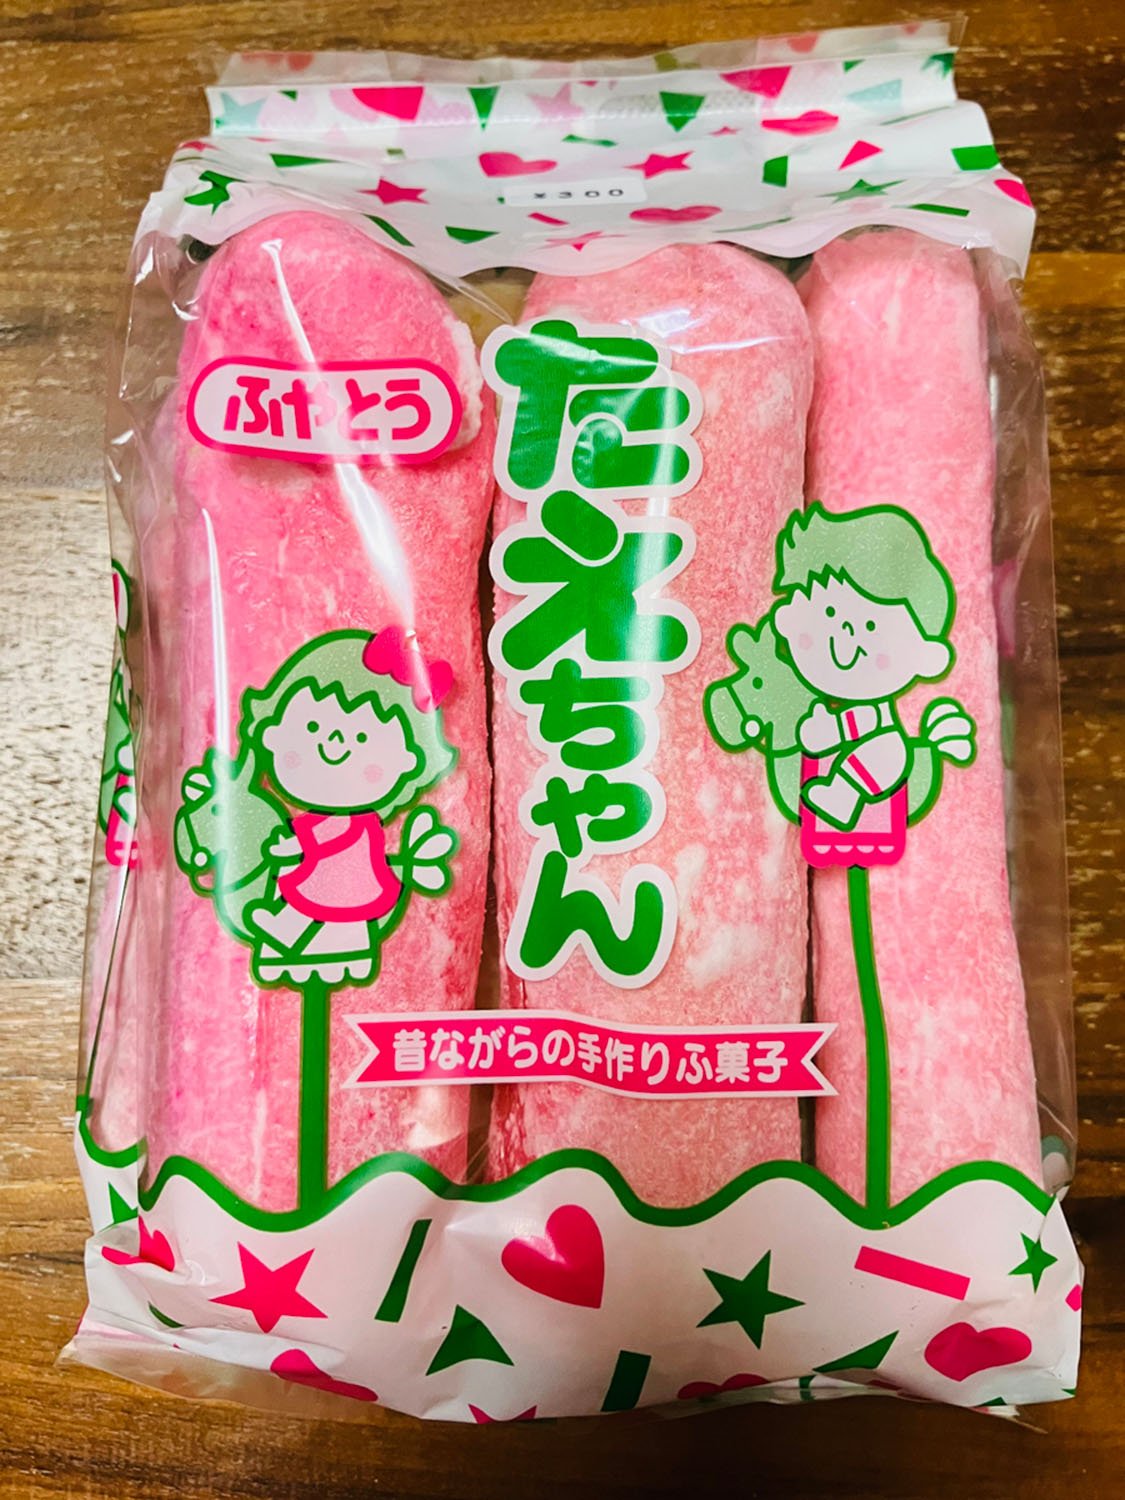 島田（静岡）の大井神社売店で購入した麩菓子。調べてみると、静岡近辺では麩菓子はピンク色をしているのが一般的らしい（麩屋藤商店）。